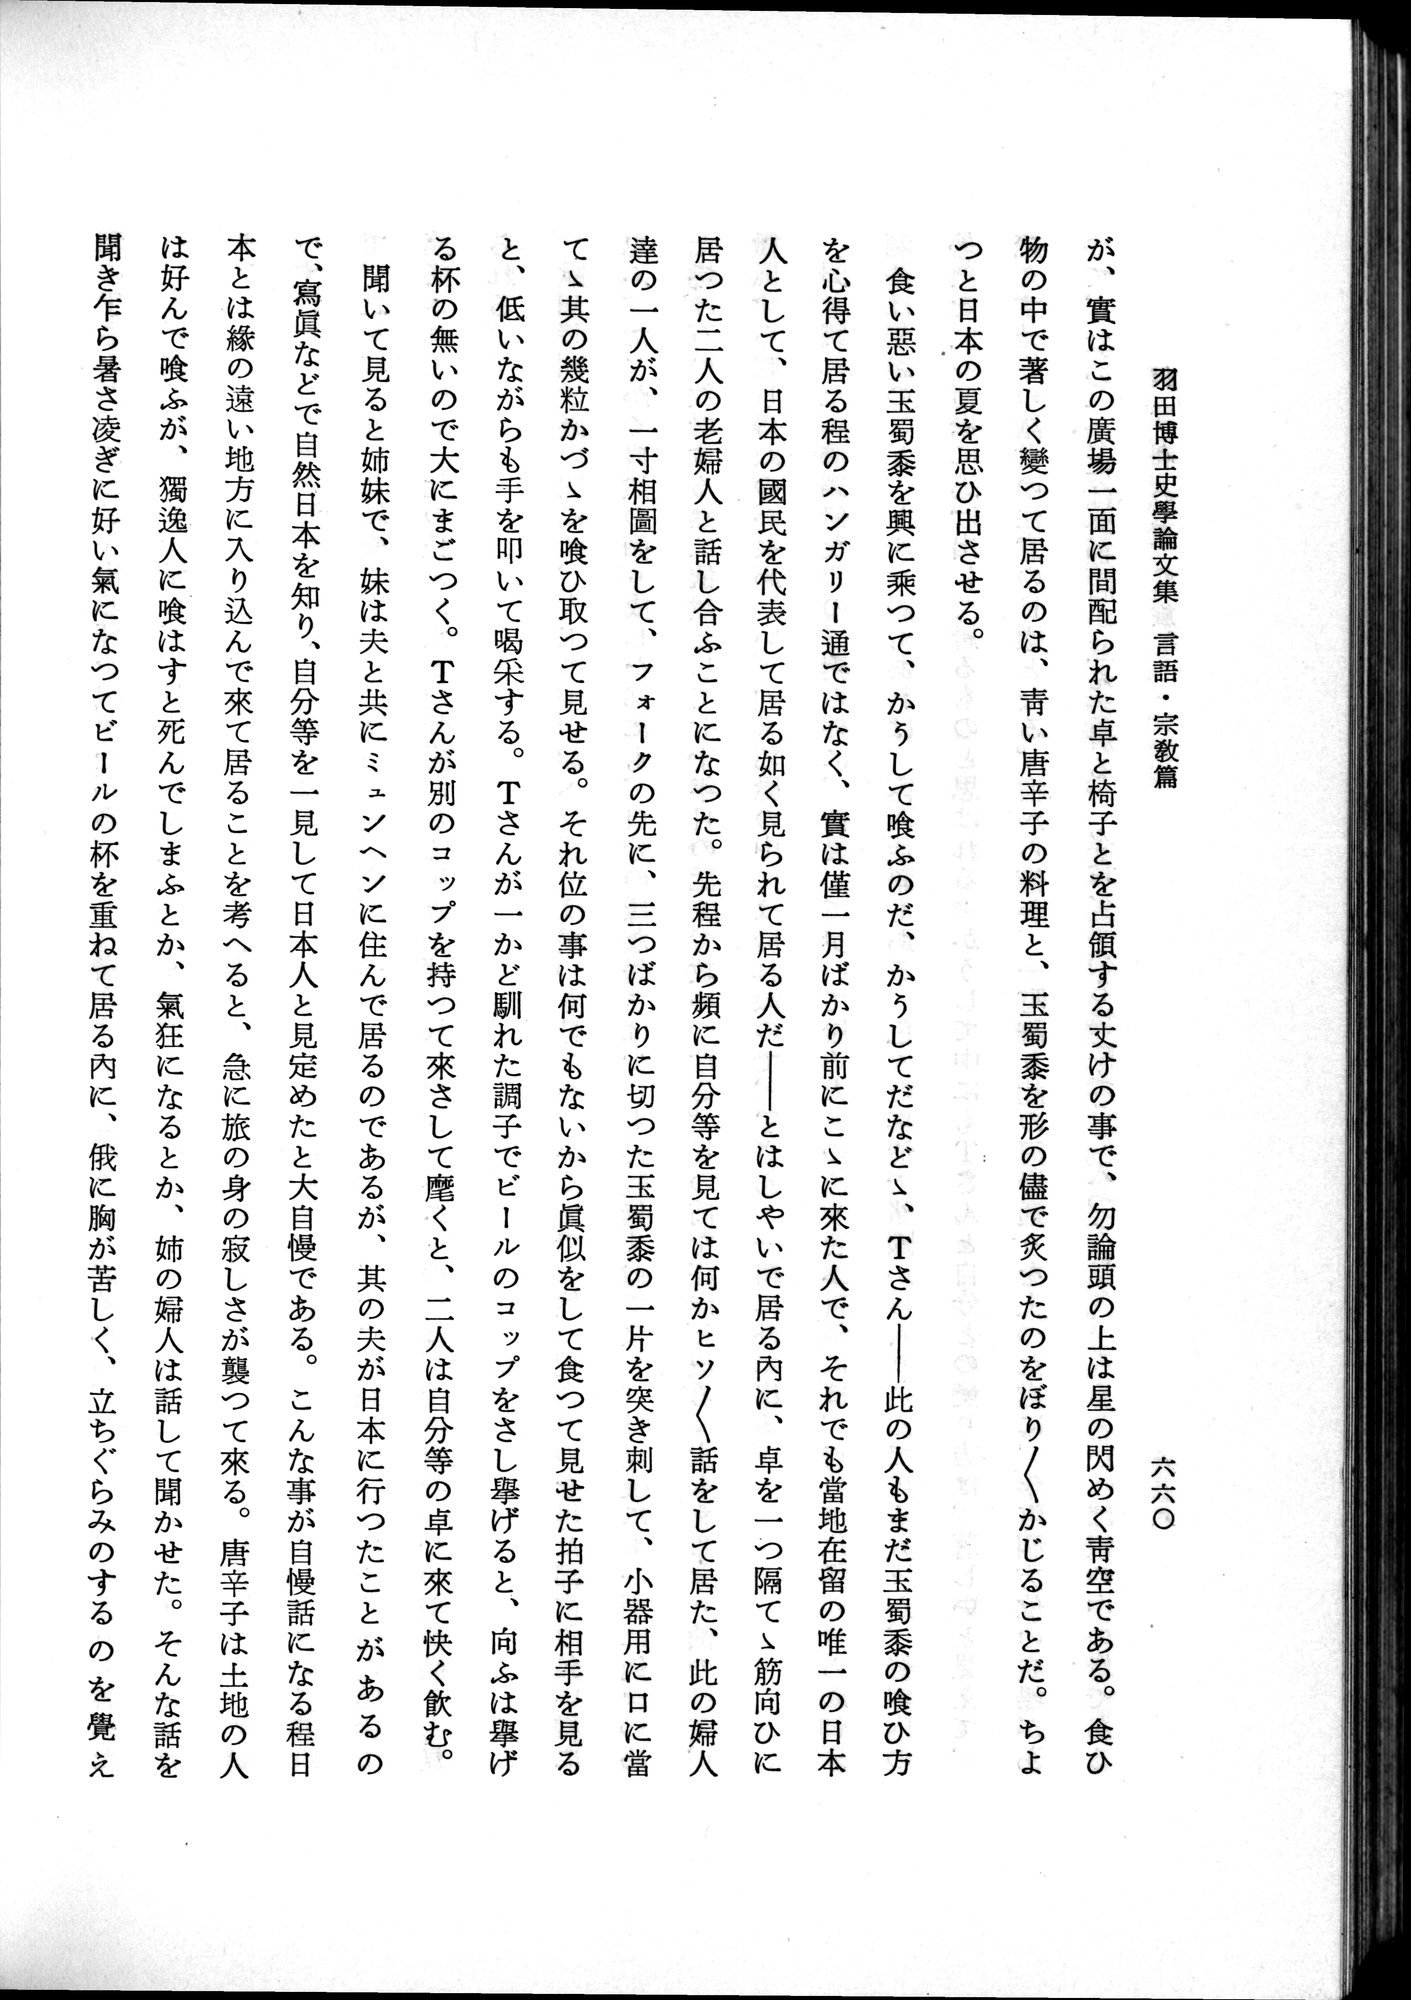 羽田博士史学論文集 : vol.2 / Page 724 (Grayscale High Resolution Image)